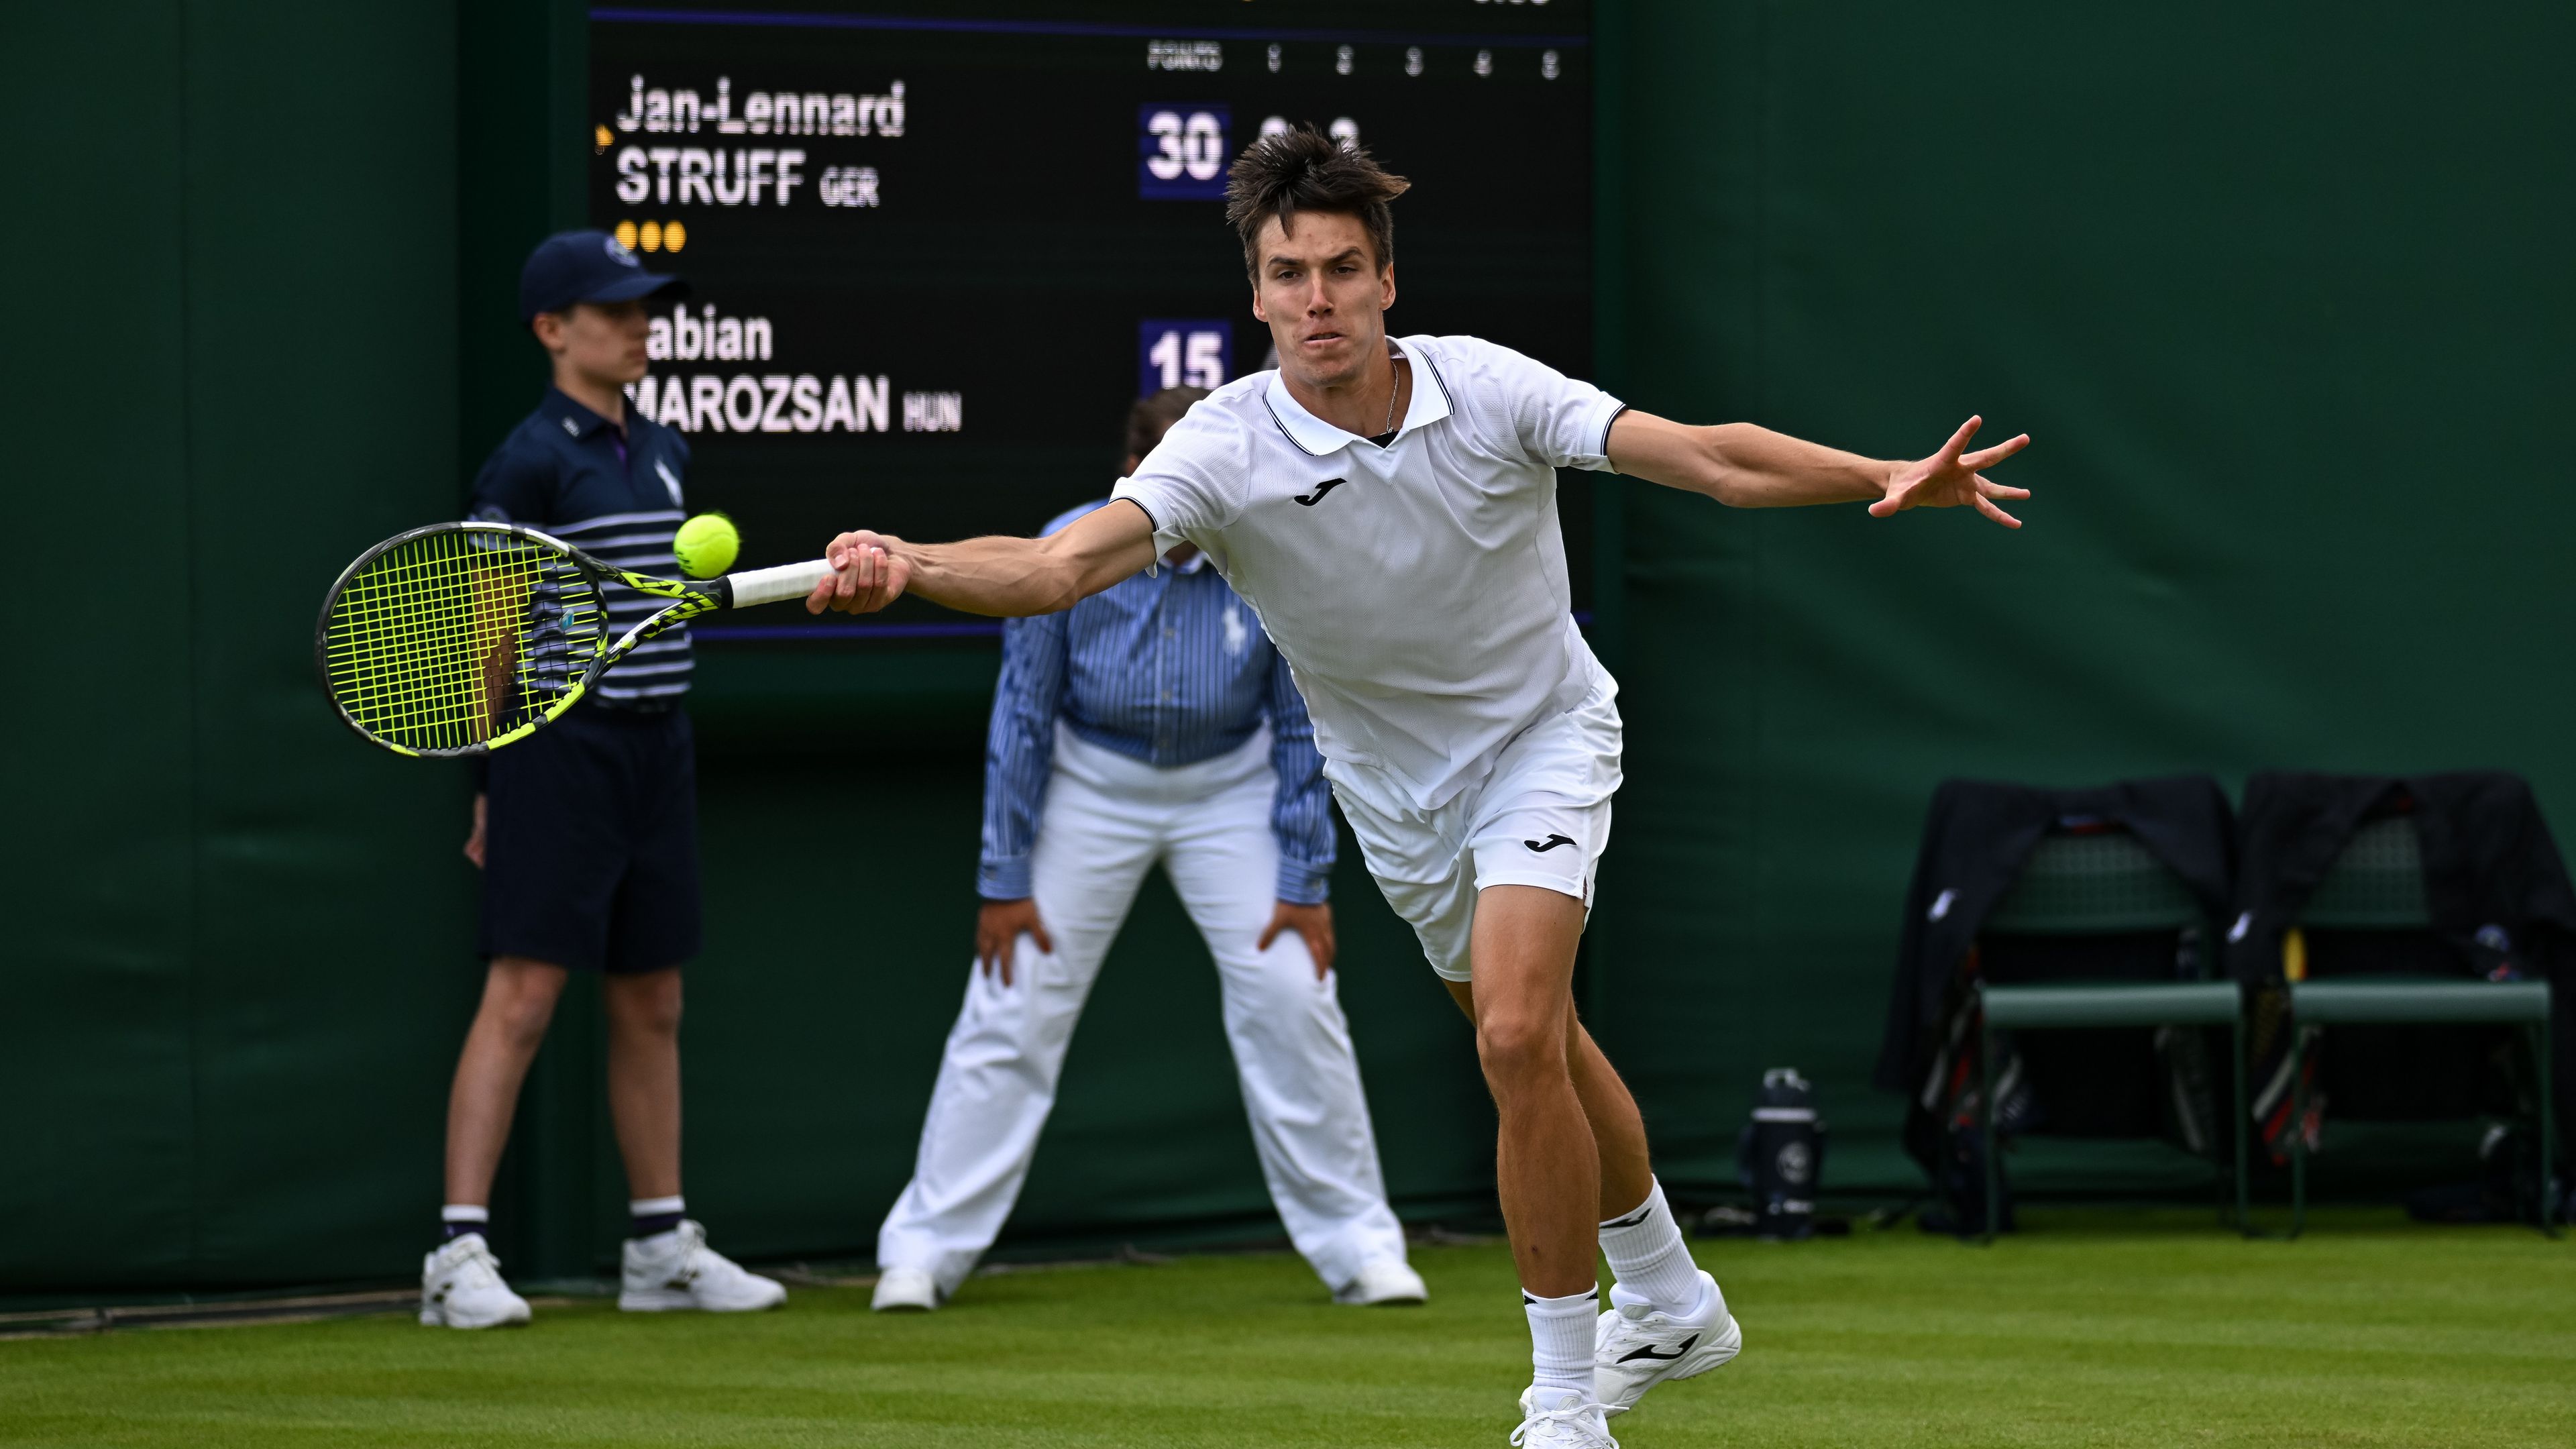 Elhalasztották a magyarok meccseit Wimbledonban